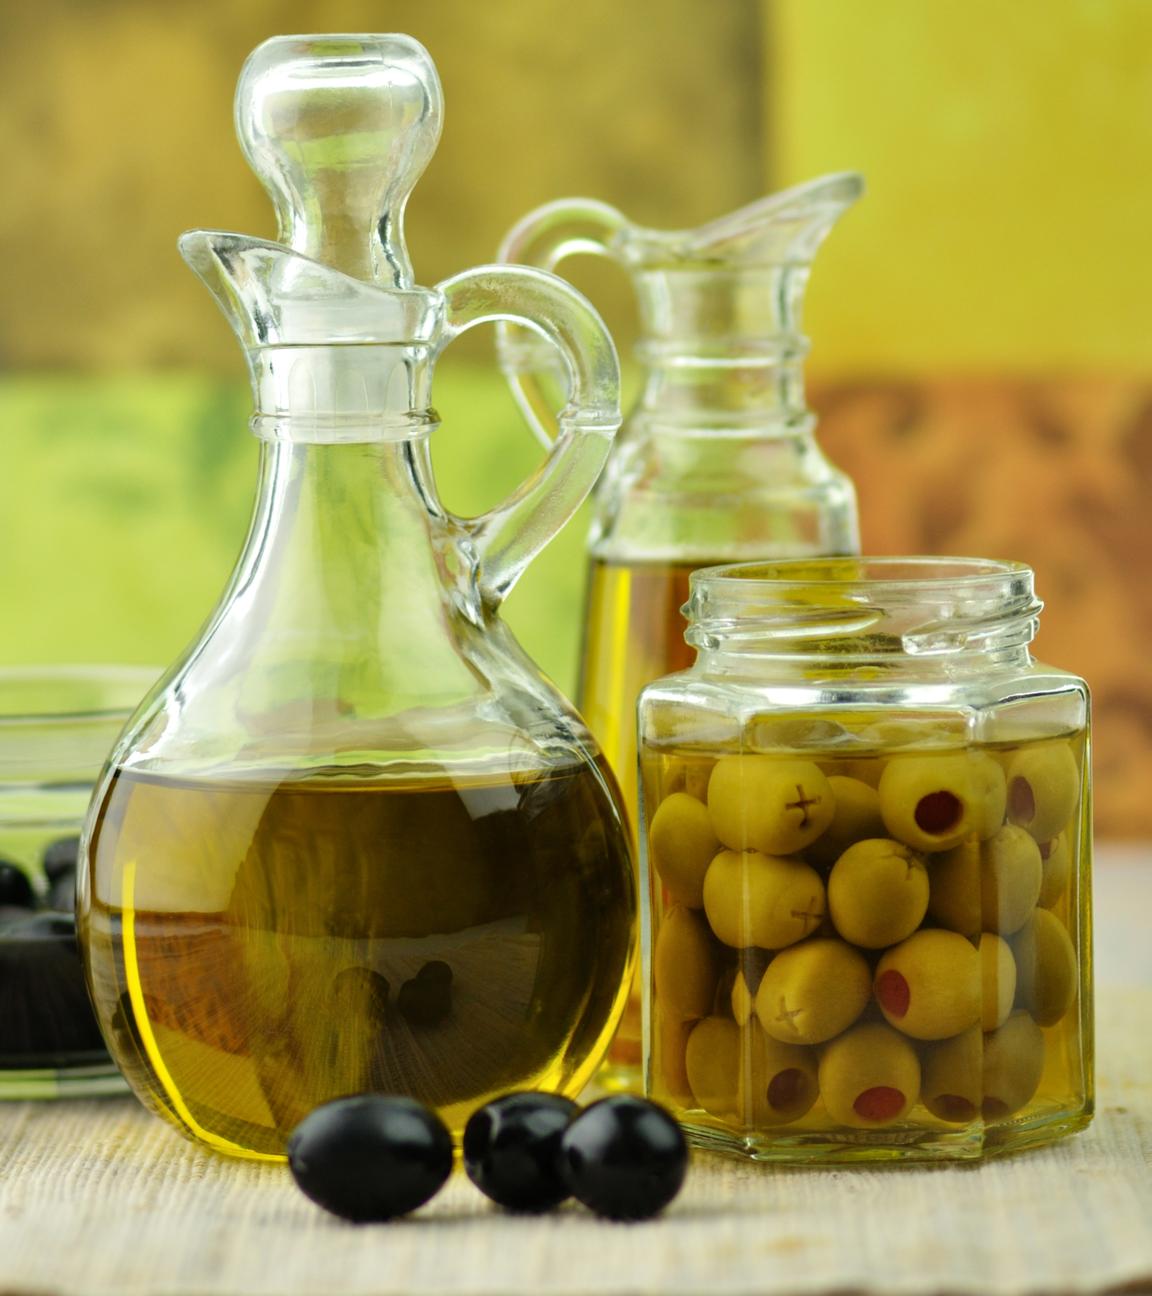 Olivenöl in einer Karaffe steht in der Mitte. Daneben steht ein Einmachglas mit Oliven und weitere Glasgefäße.